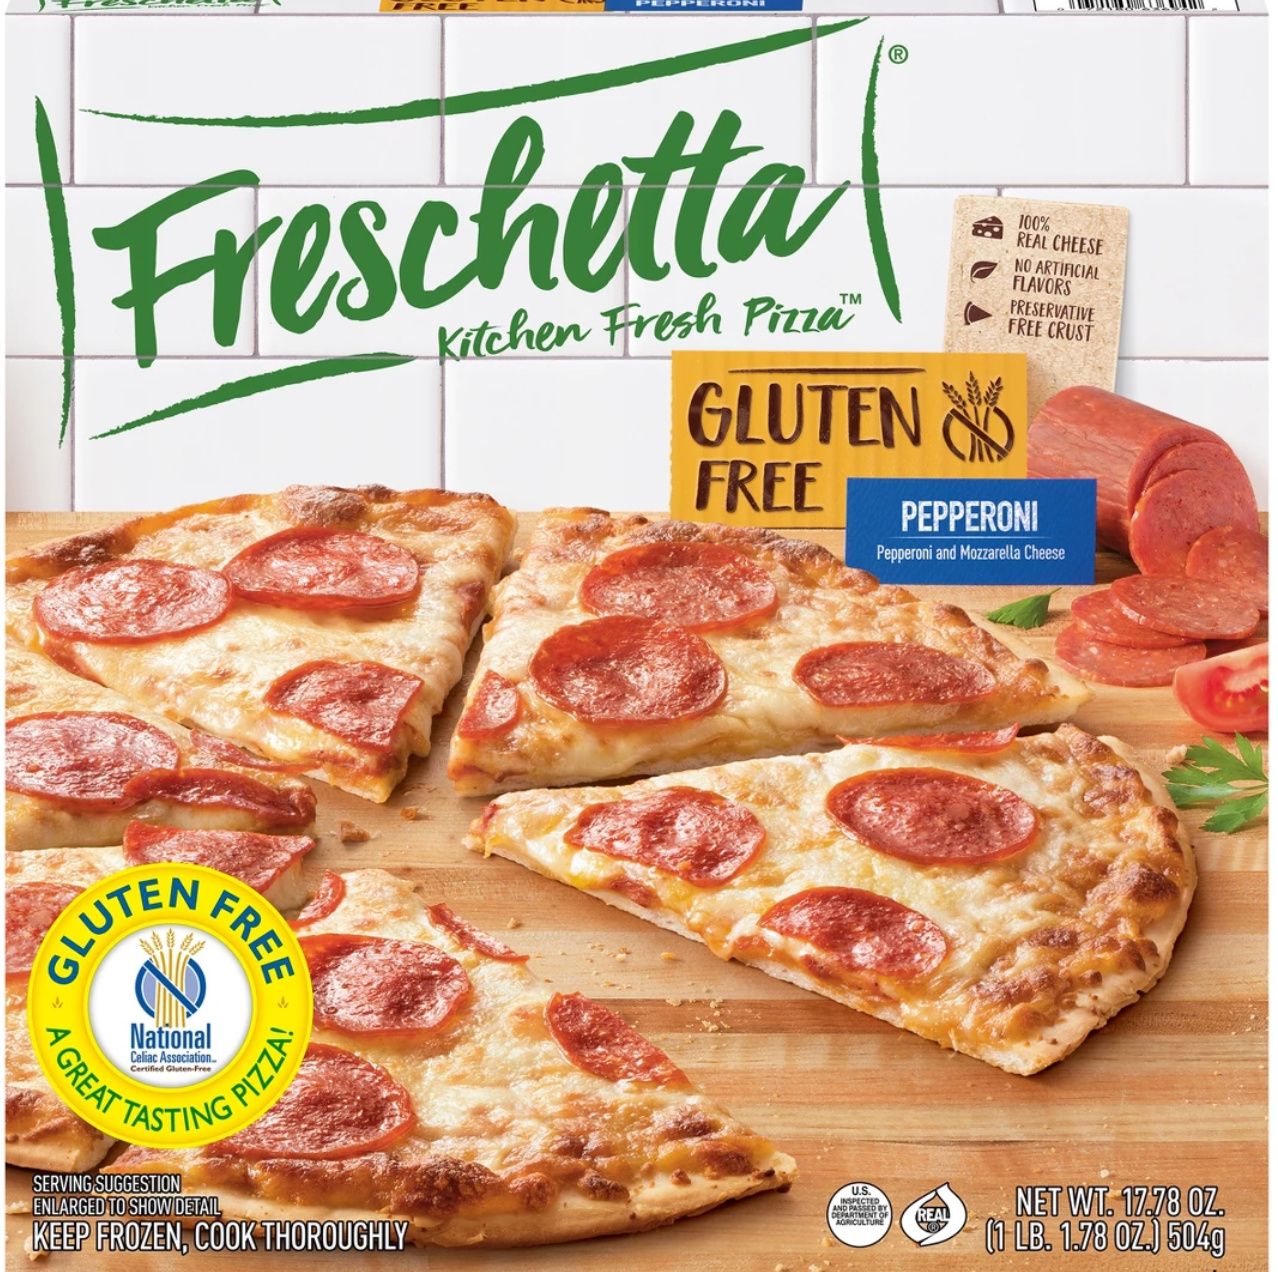 The best gluten-free pizza brands from our readers: Freschetta Kitchen Fresh Pizza 